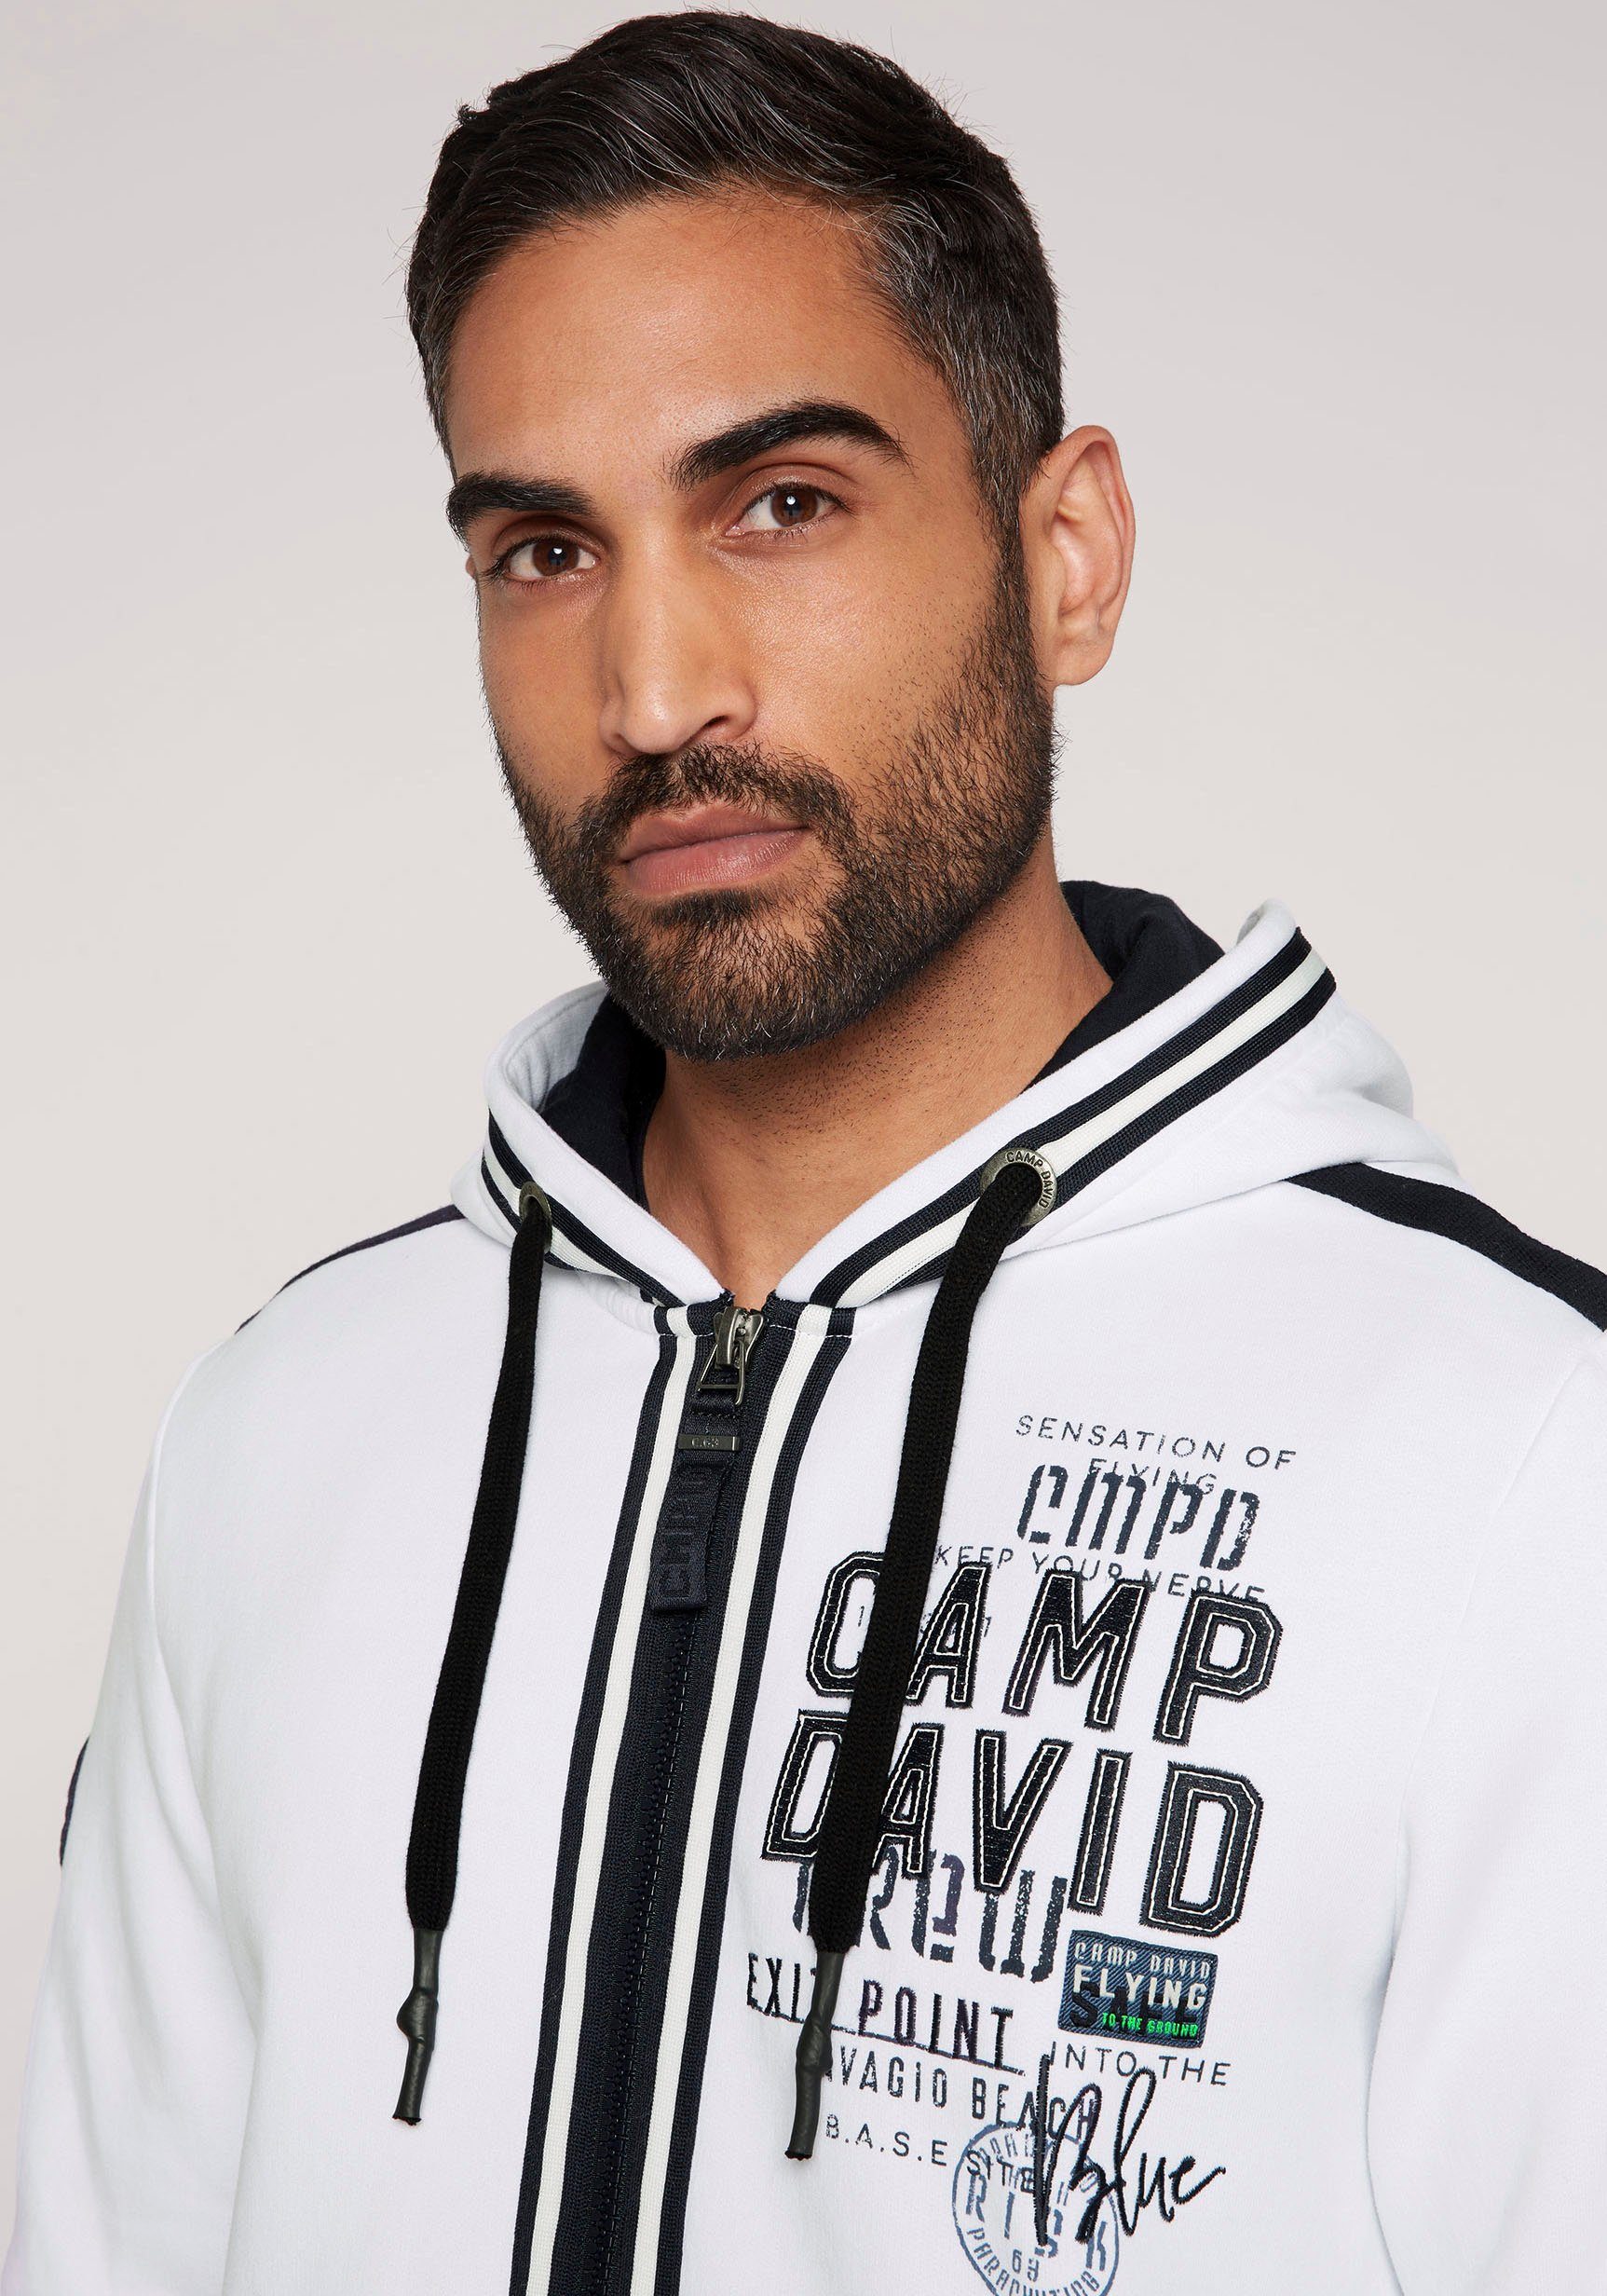 DAVID und Rückseite Vorder- mit opticwhite auf CAMP Label-Applikationen Kapuzensweatshirt